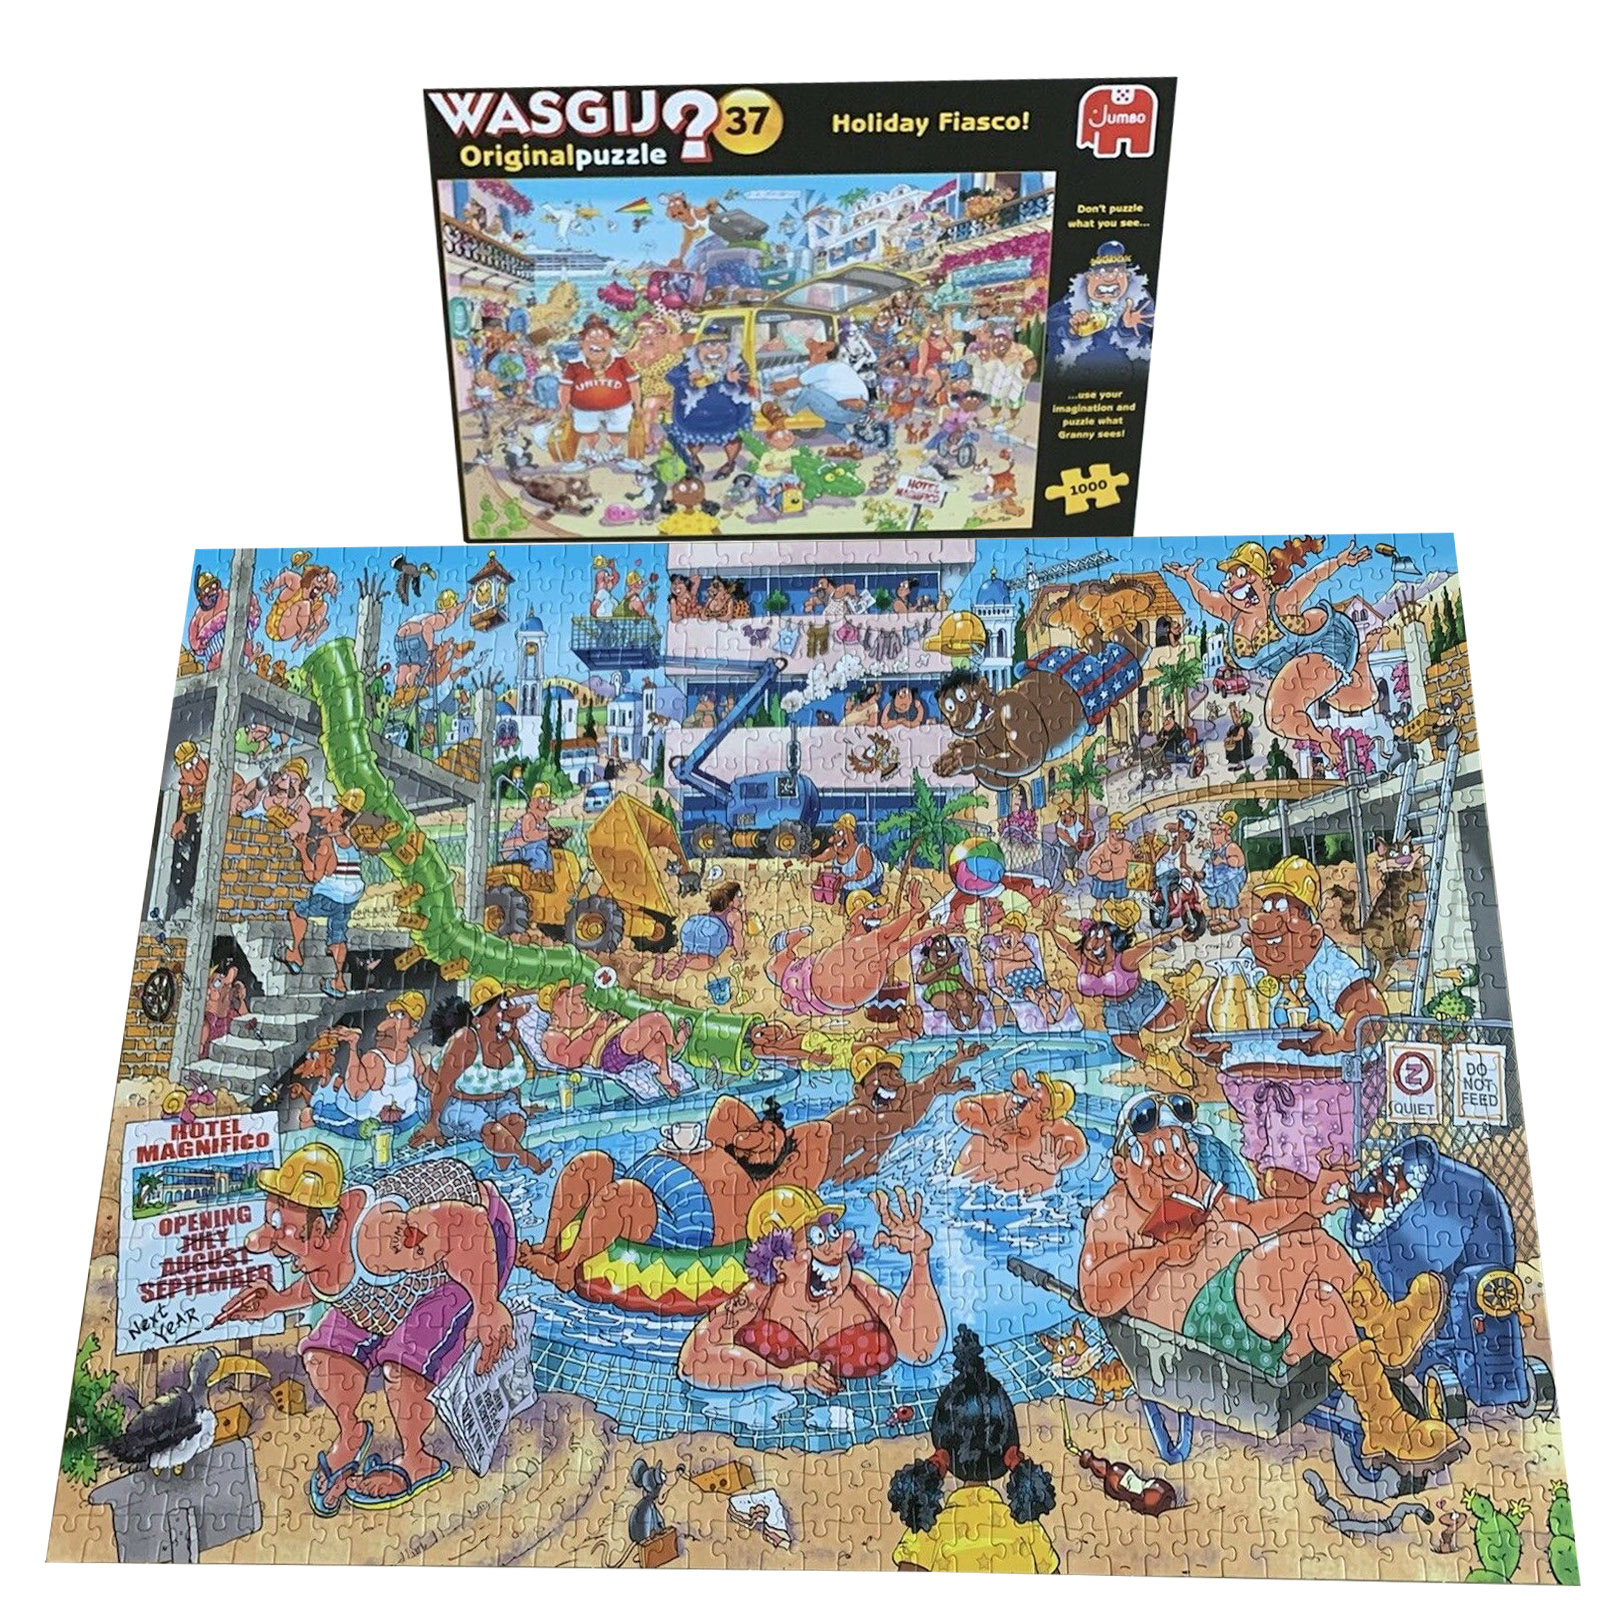 Wasgij Original 37 Holiday Fiasco 1000 piece Jigsaw Puzzle NEW